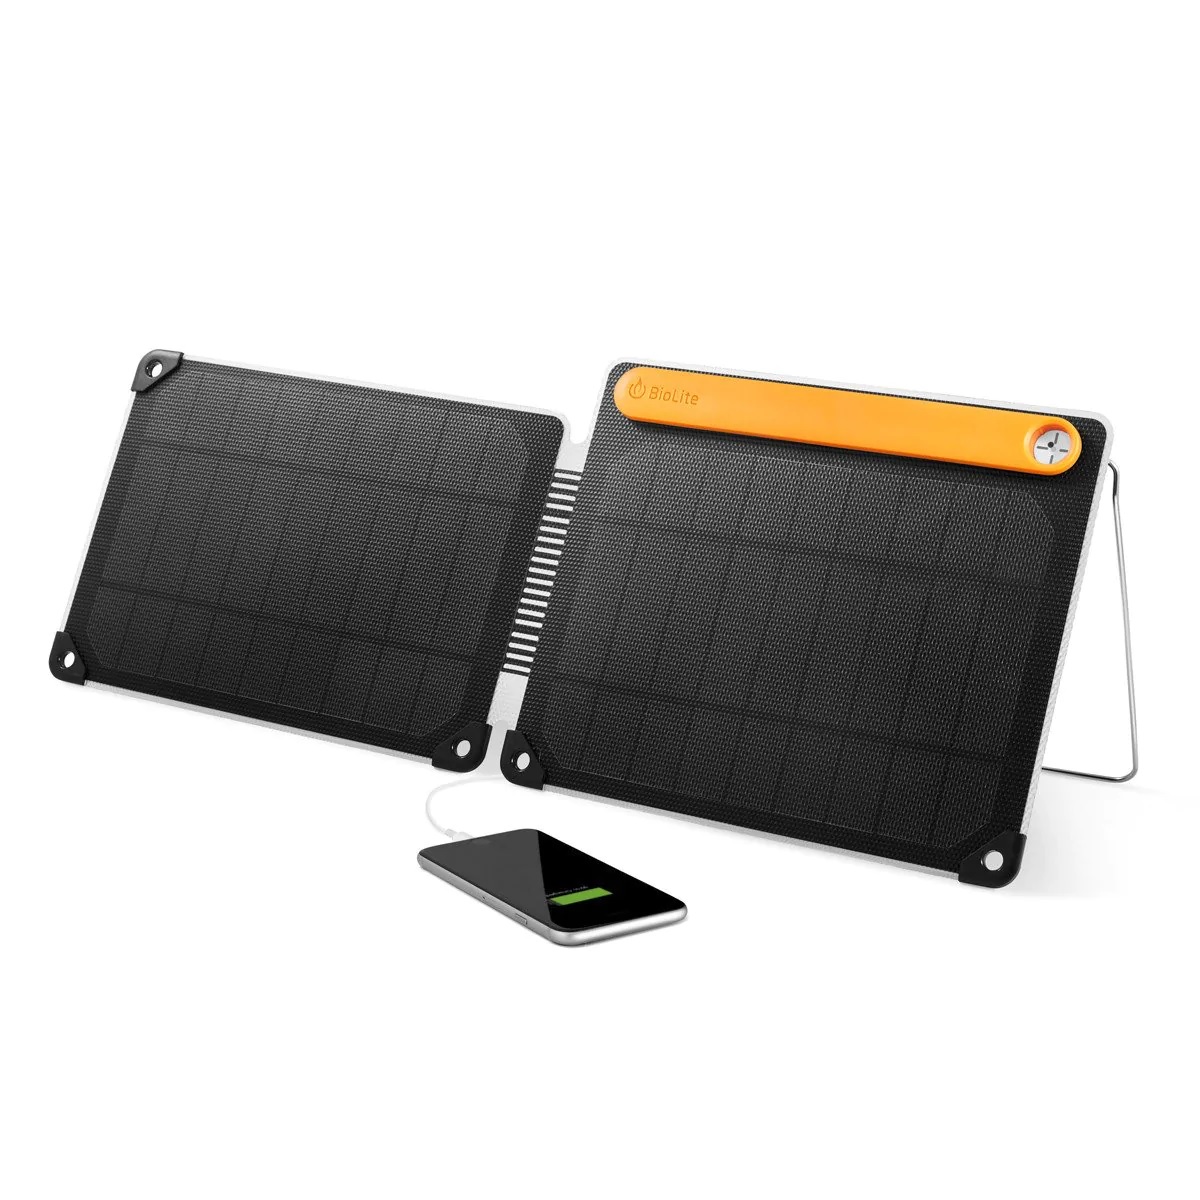 Pannello solare BioLite +